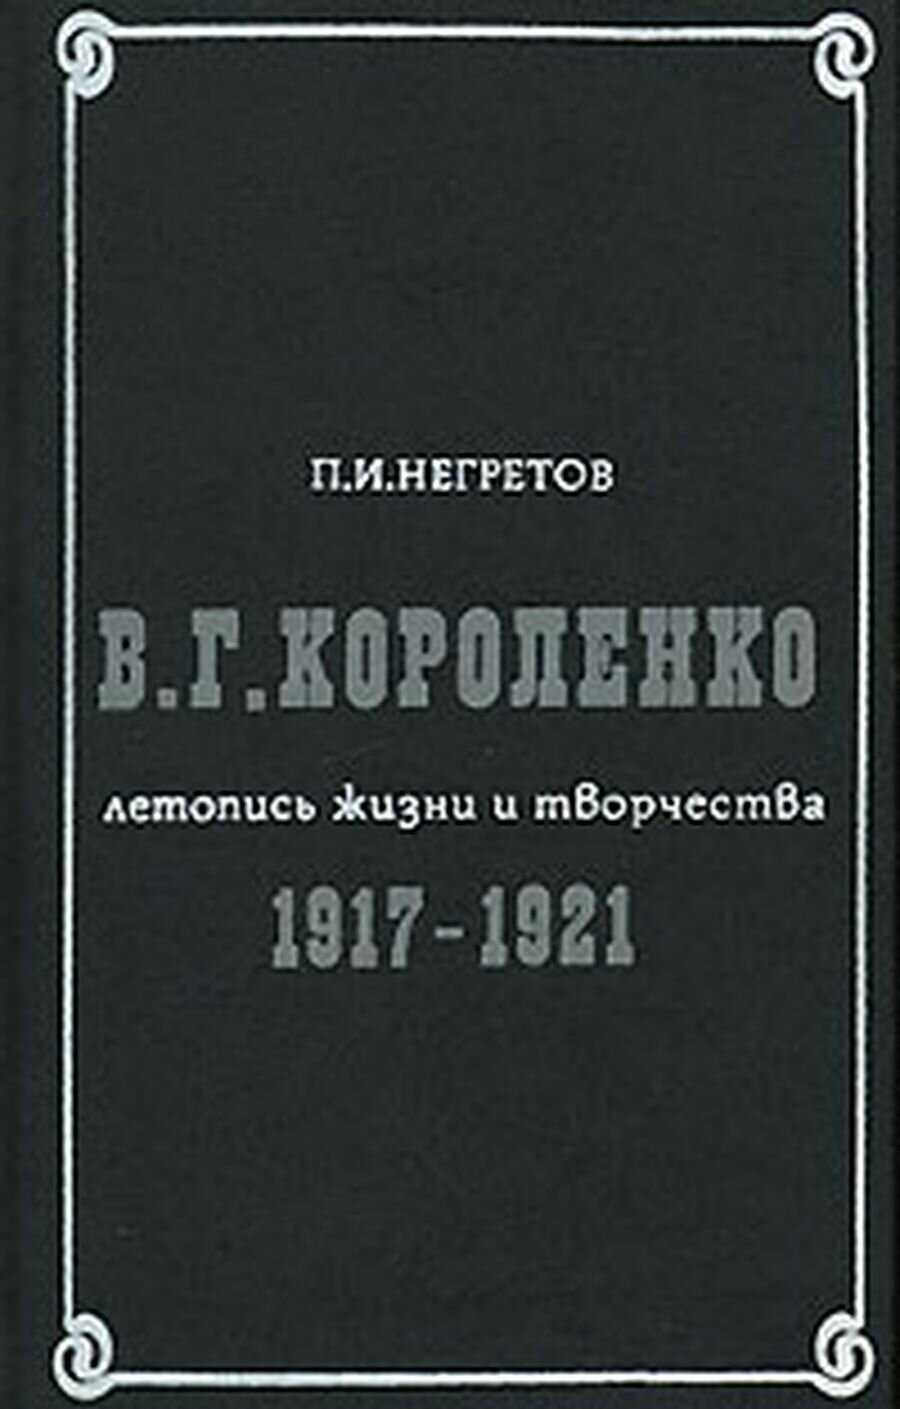 В. Г. Короленко. Летопись жизни и творчества. 1917-1921